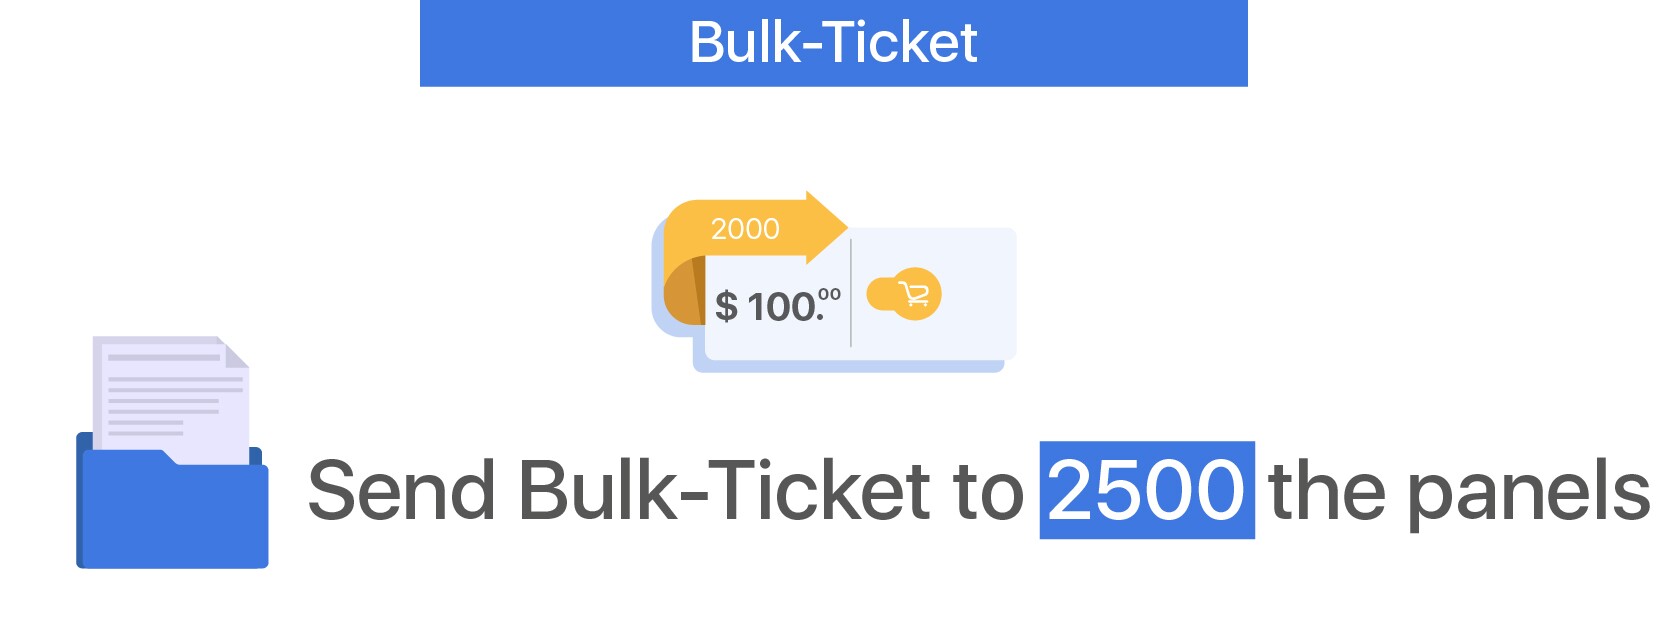 Bulk-Ticket - 2000 Panels